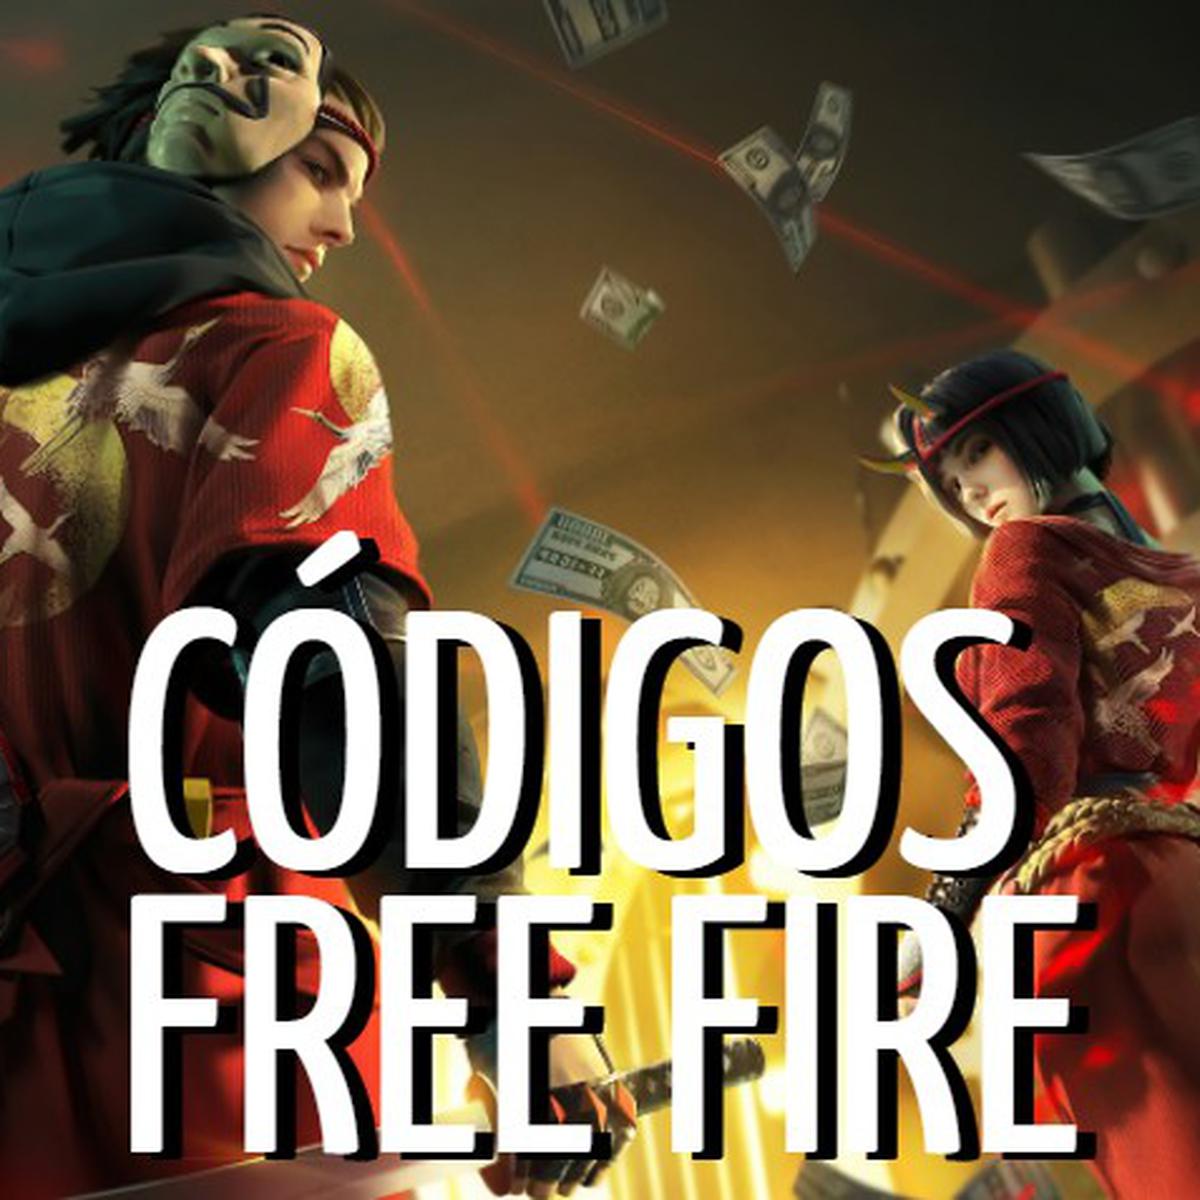 Códigos Free Fire de hoy 11 de octubre de 2021: ¿cuáles son las recompensas  a canjear?, Garena, Videojuegos, Battle royale, revtli, RESPUESTAS